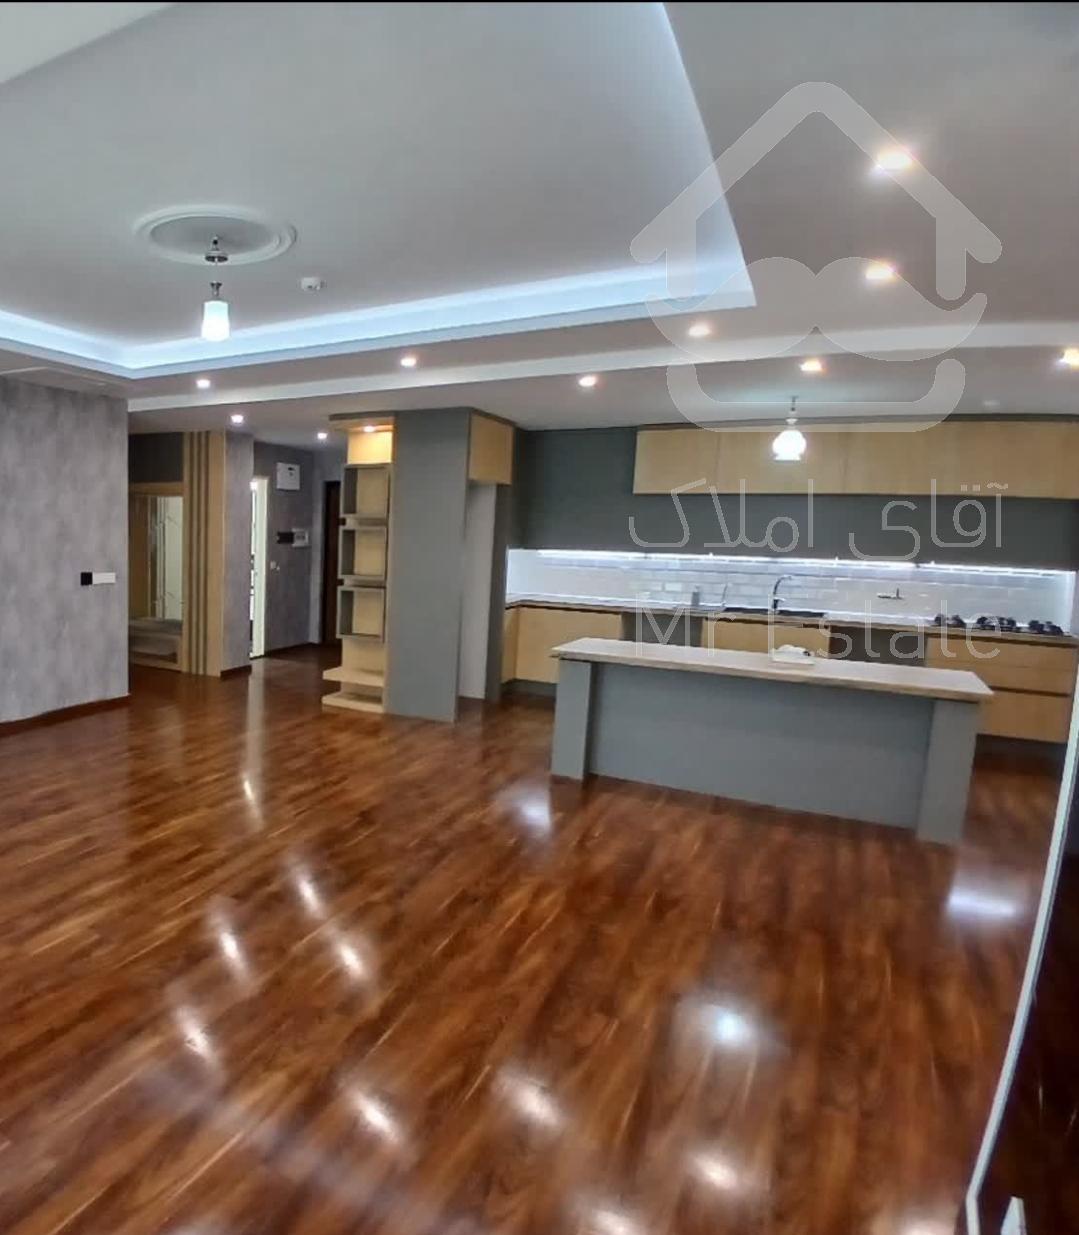 فروش آپارتمان ۱۳۰ متر نوساز شهرک خرازی طبقه ۲۰ کد۳۹۸